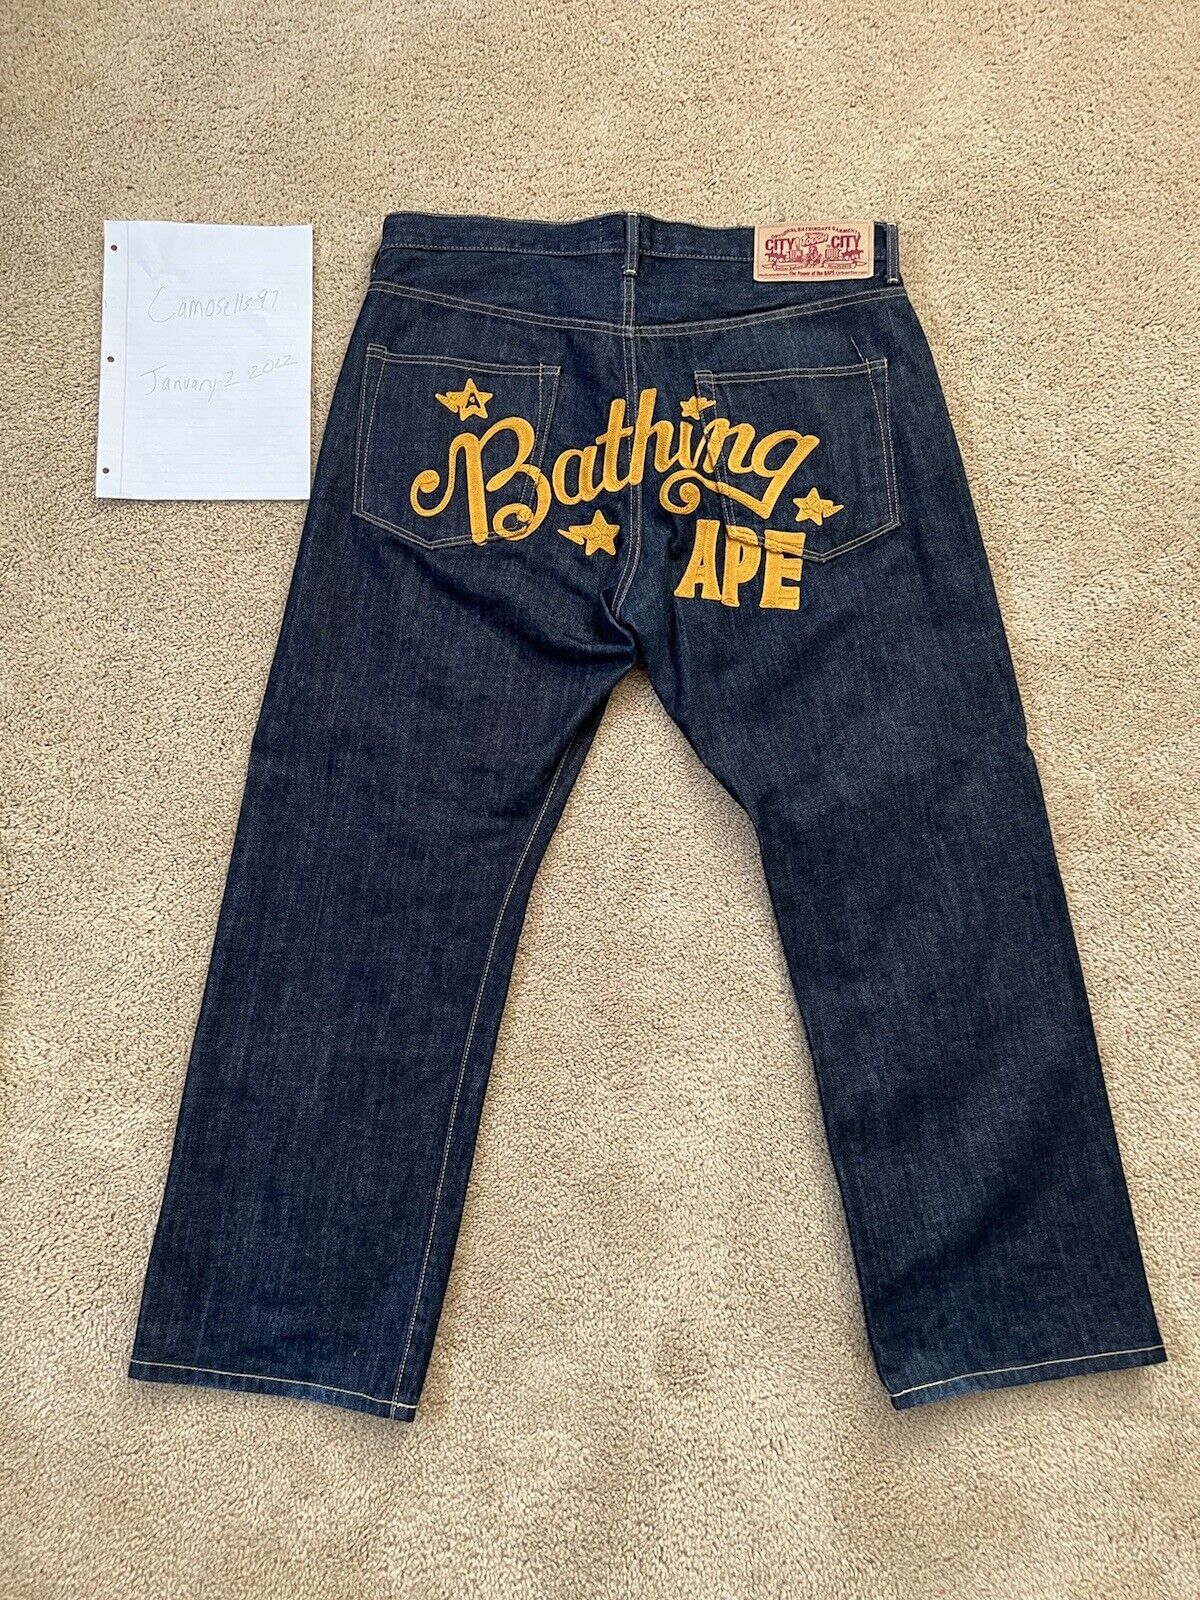 Bape Jeans Denim Embroidered A Ape Nigo Era | eBay